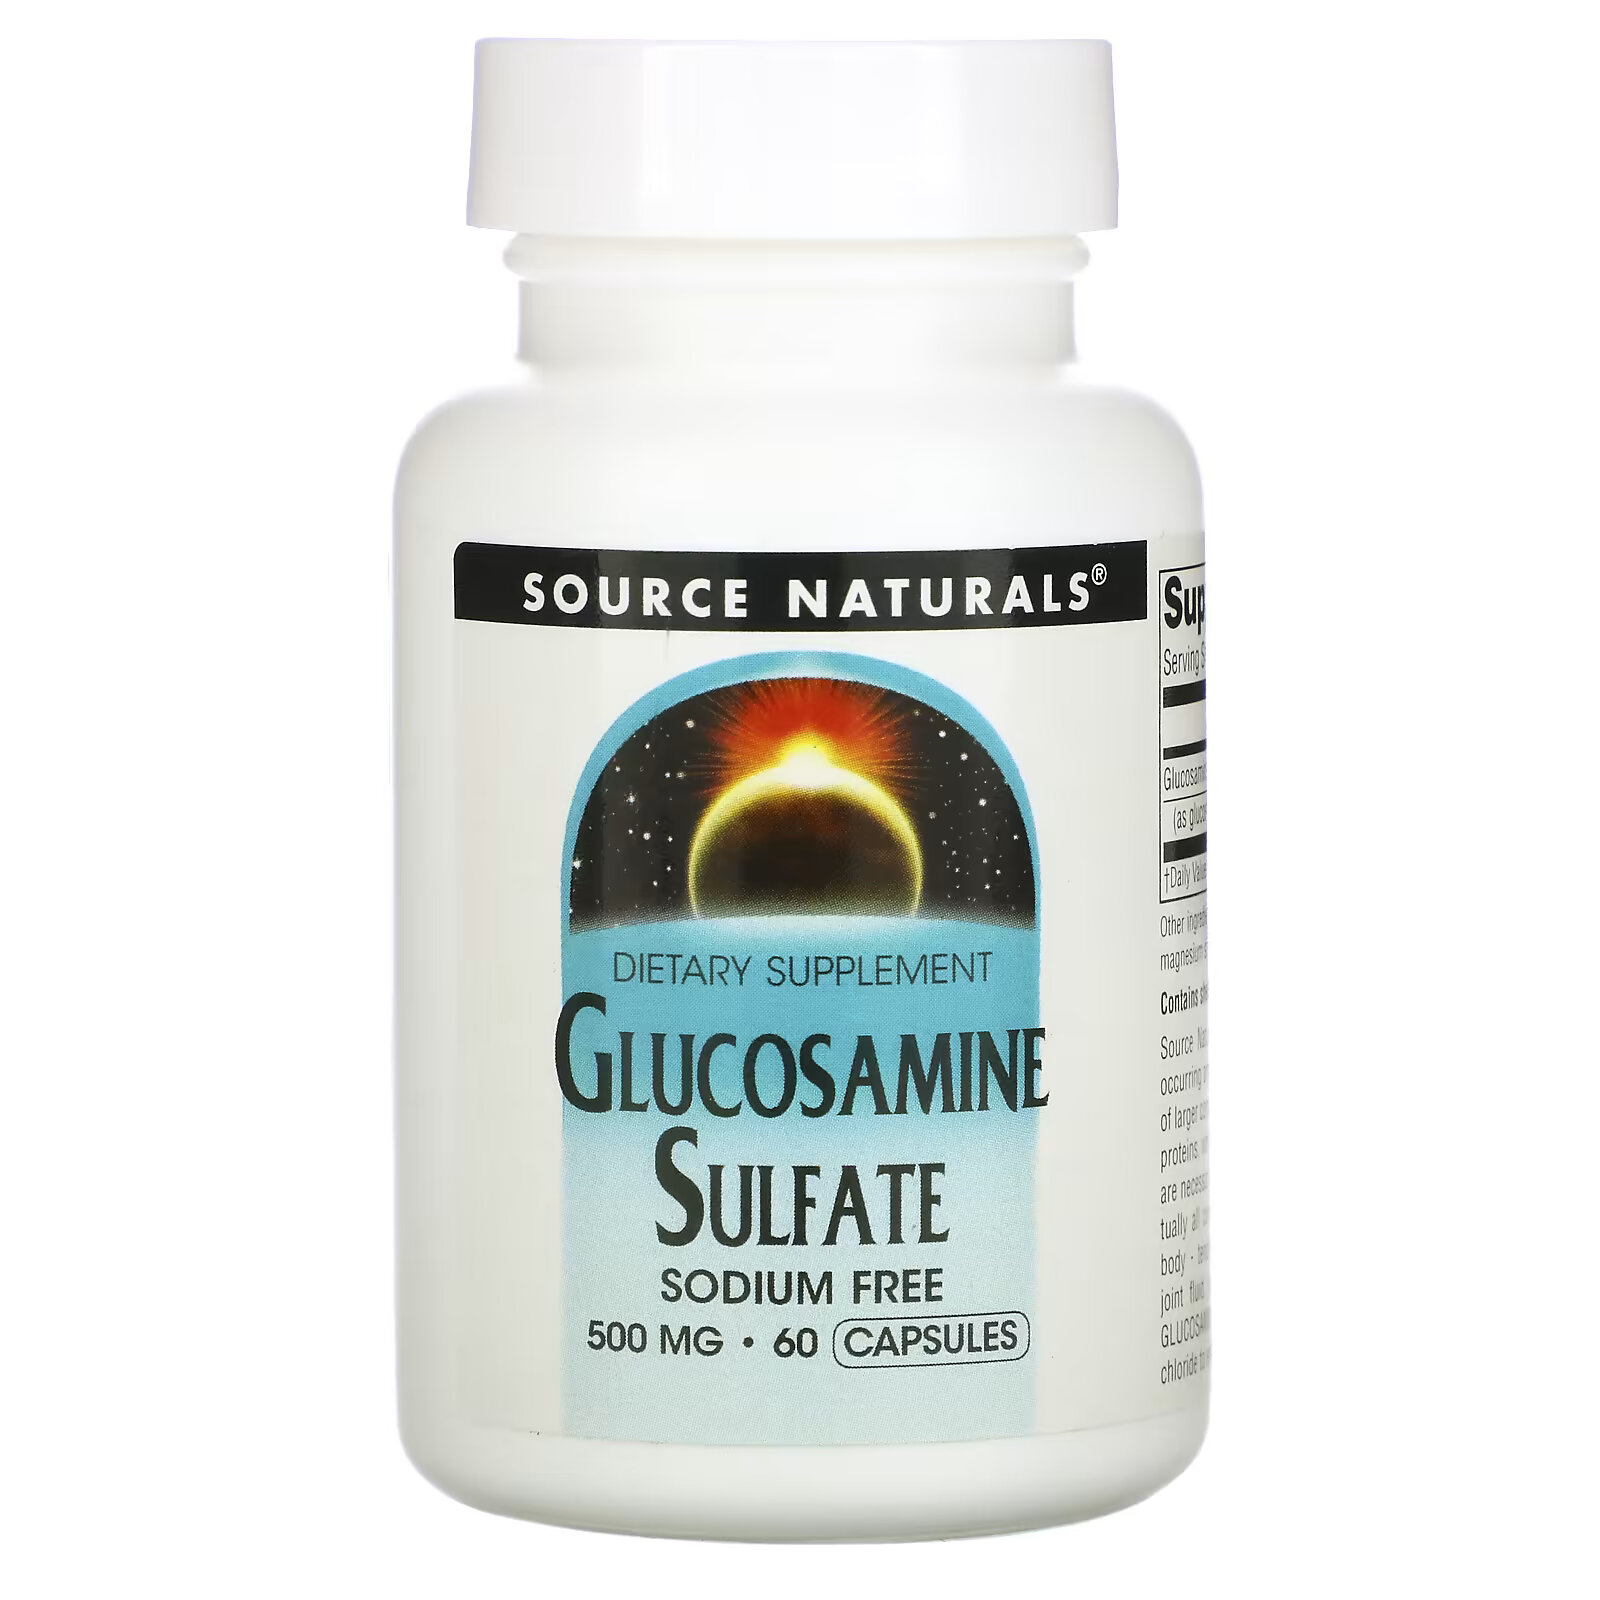 source naturals сульфат глюкозамина 500 мг 60 капсул Source Naturals, Сульфат глюкозамина, 500 мг, 60 капсул